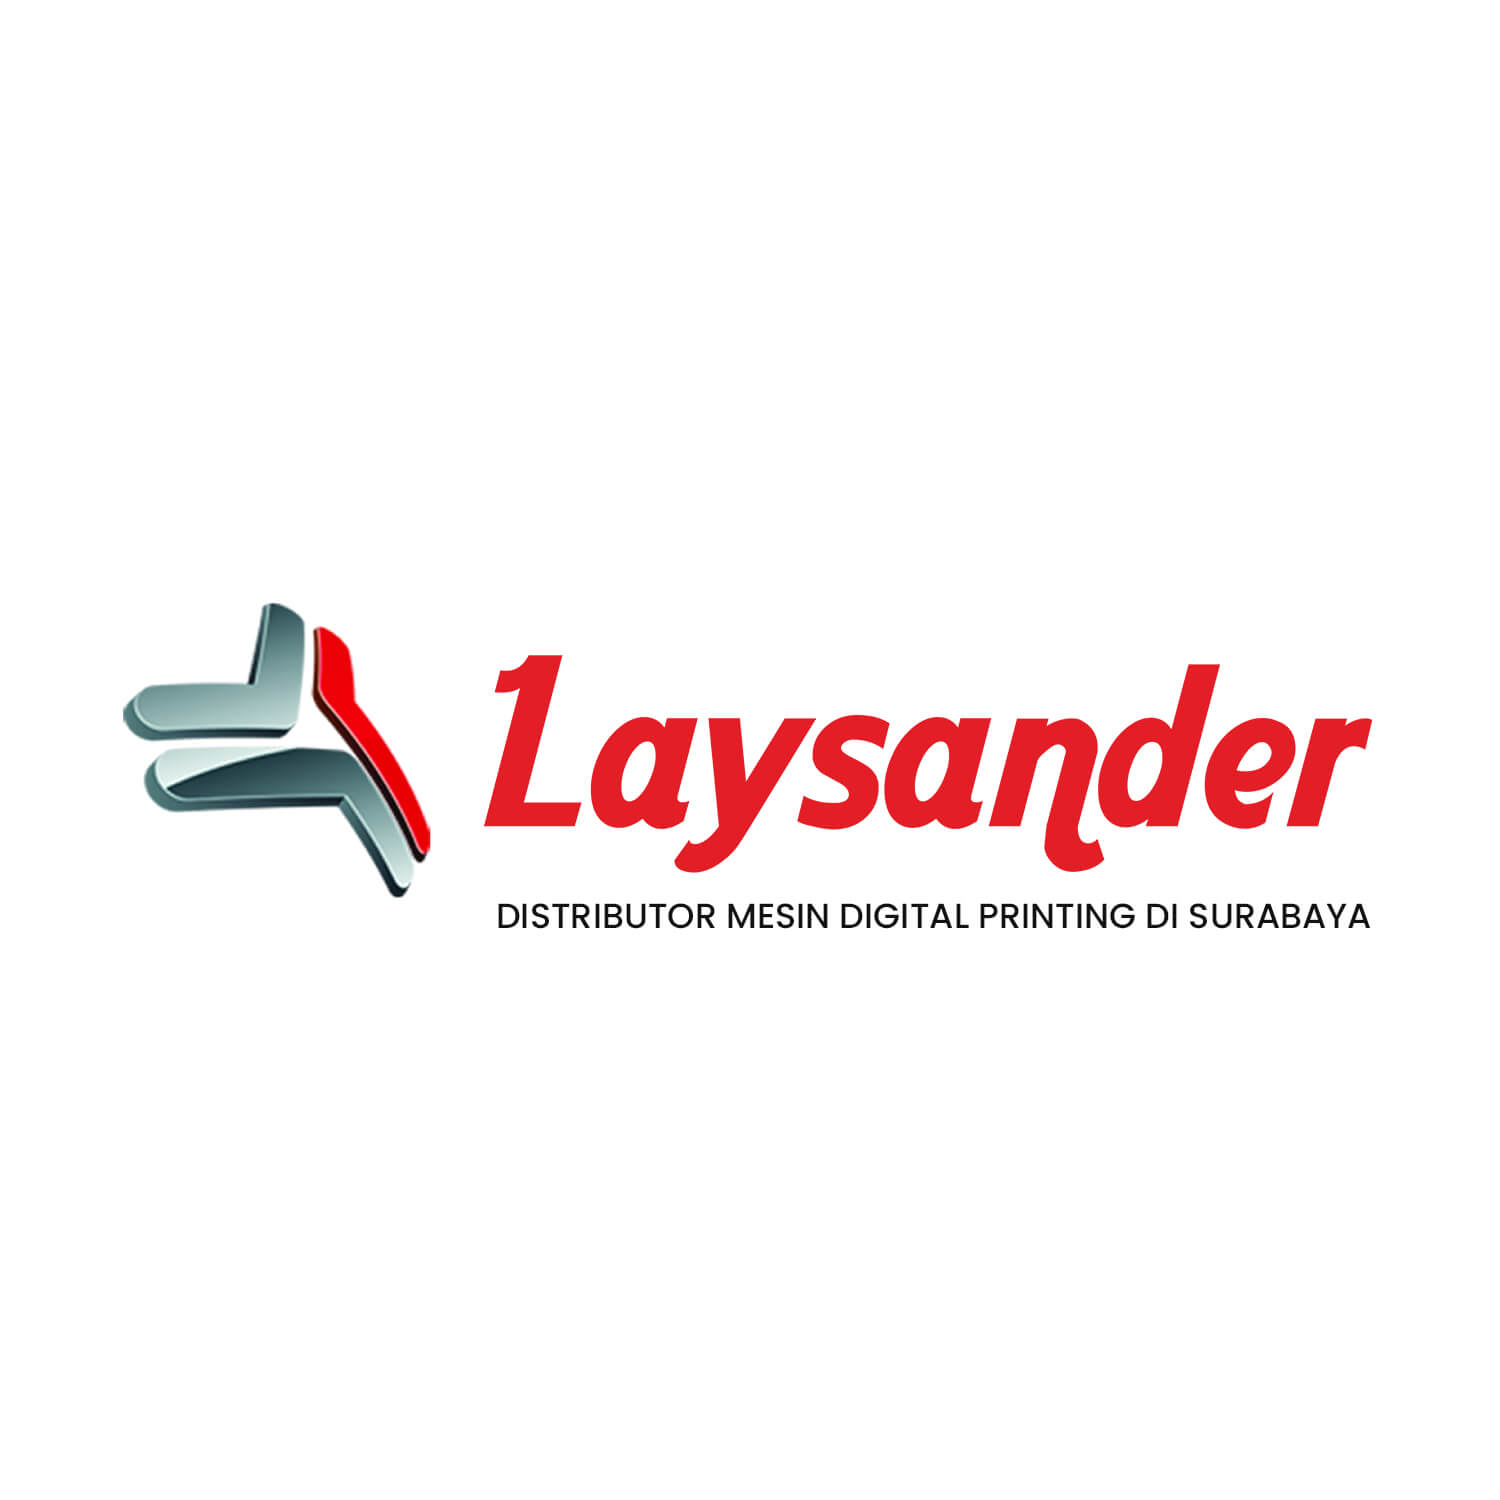 Laysander: Distributor Mesin Digital Printing di Surabaya